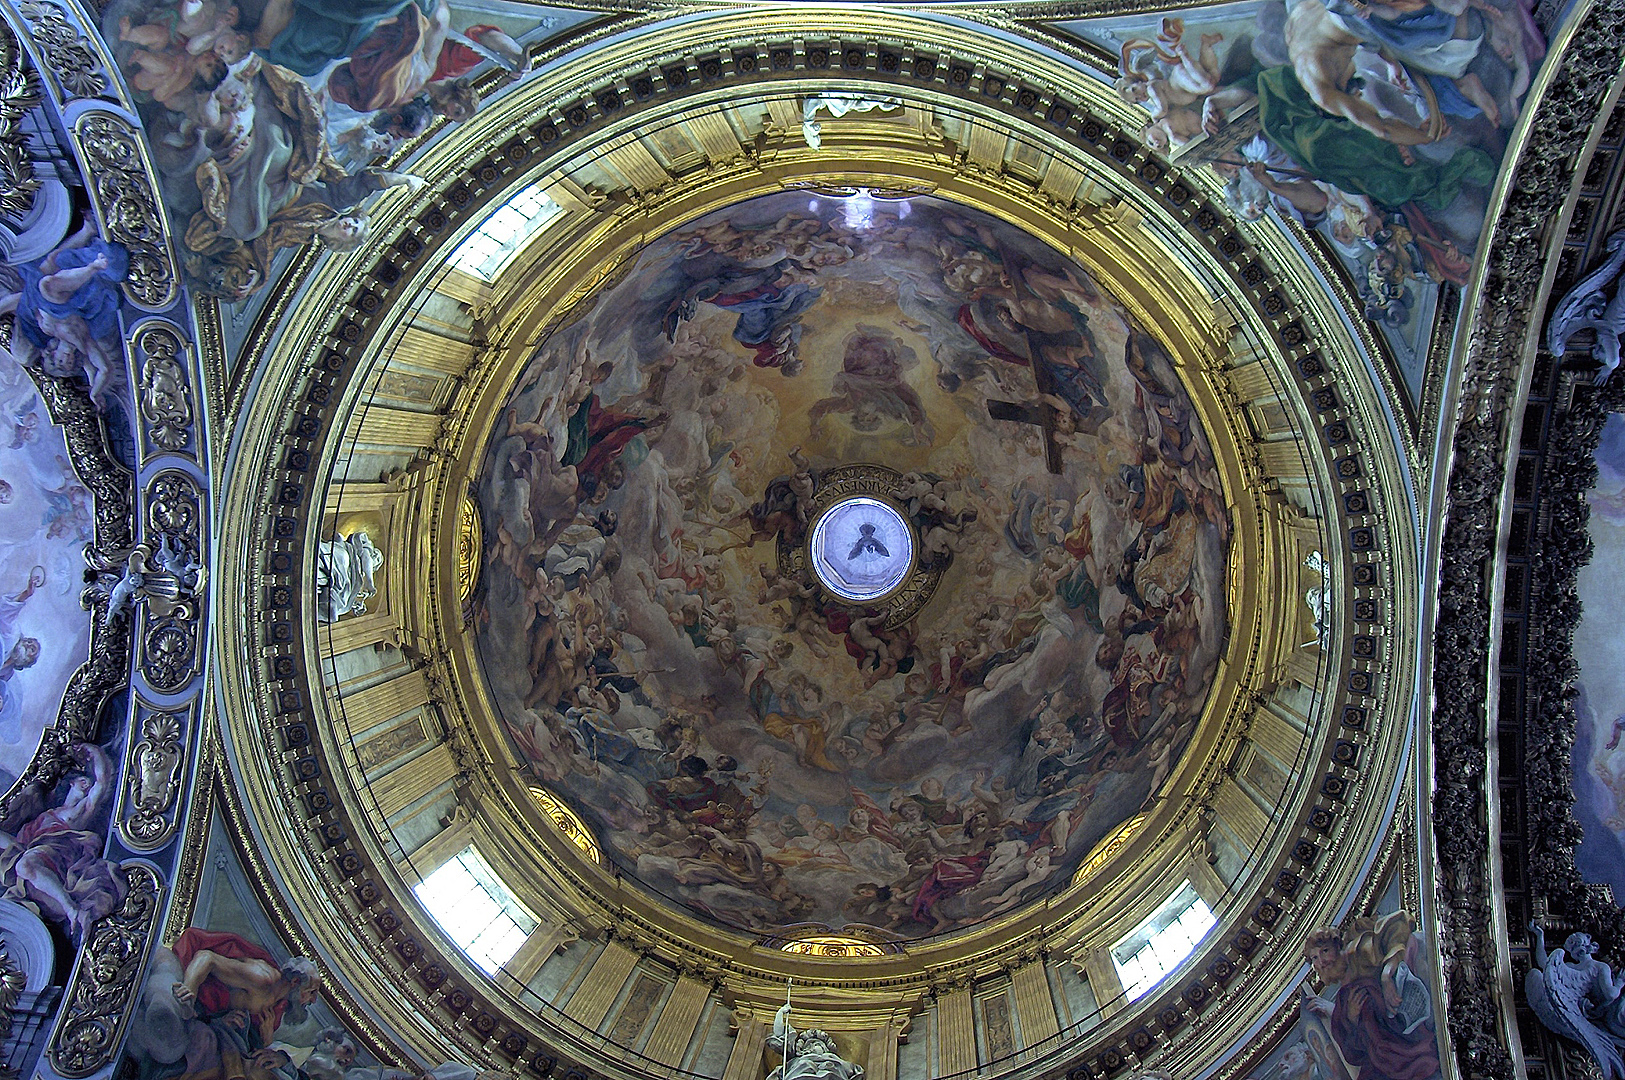 Il Ges, interieur (Rome); Il Ges, interior